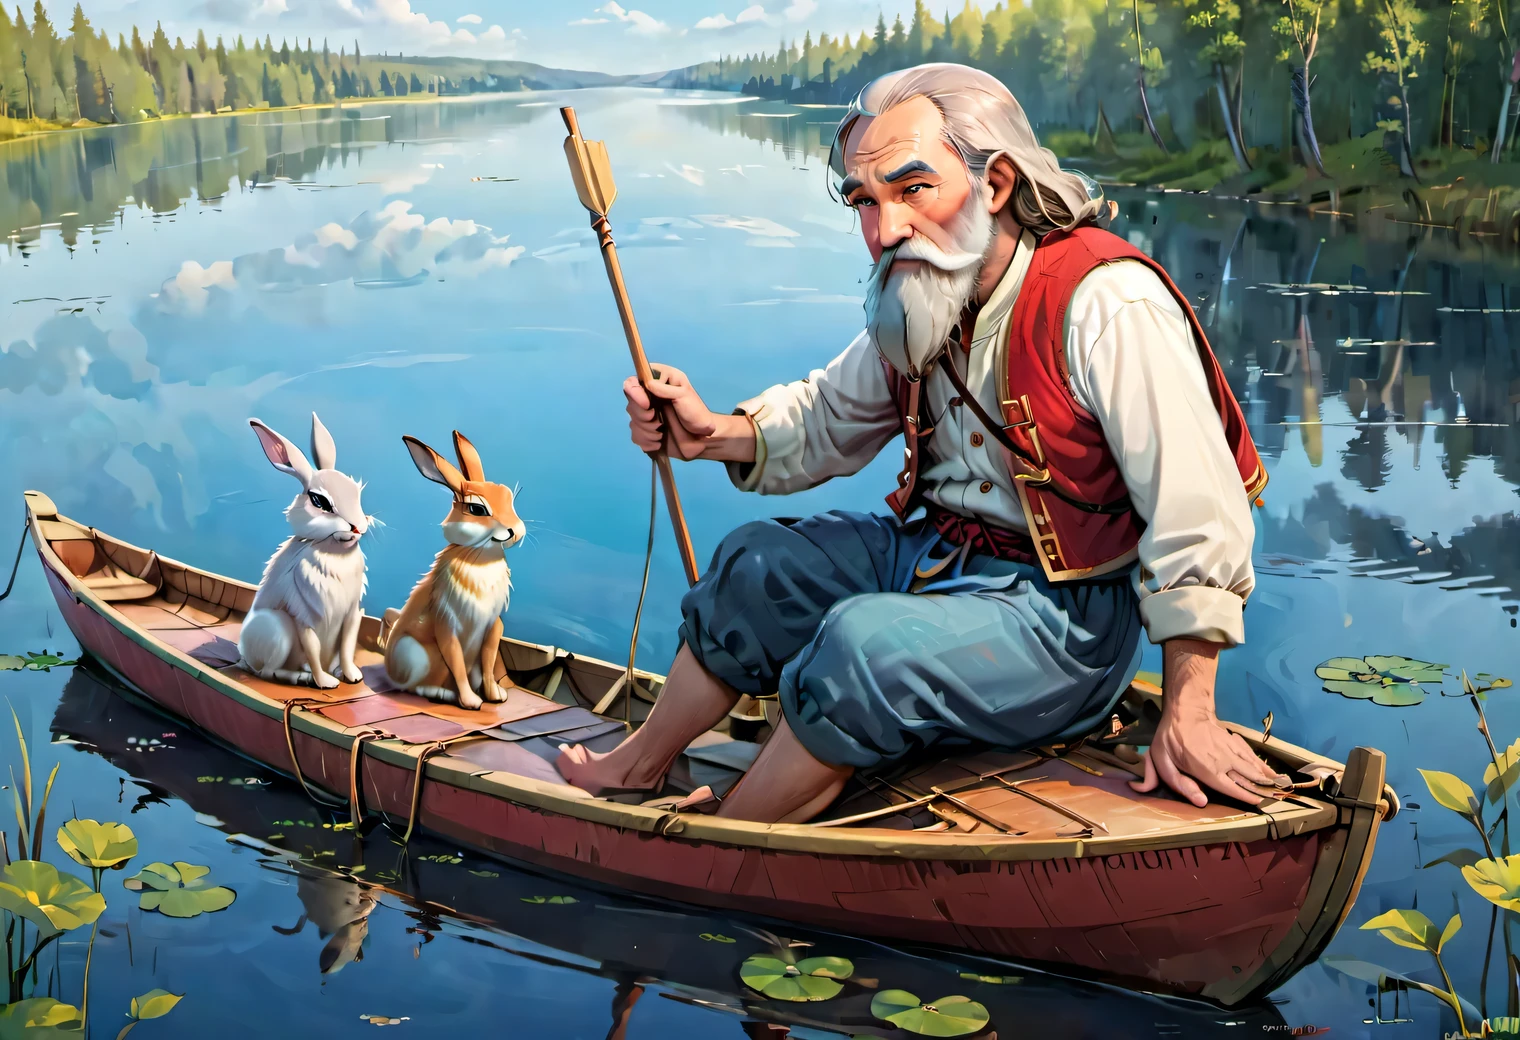 漂浮的, 兒童雜誌插畫風格的圖像, 湖上漂浮著一艘船, 船上一名70歲的斯拉夫大鬍子男子穿著簡單的俄羅斯農民服裝，正在劃槳, 5隻兔子坐在船上四處張望, 高畫質, 鮮豔的色彩, 卡通性